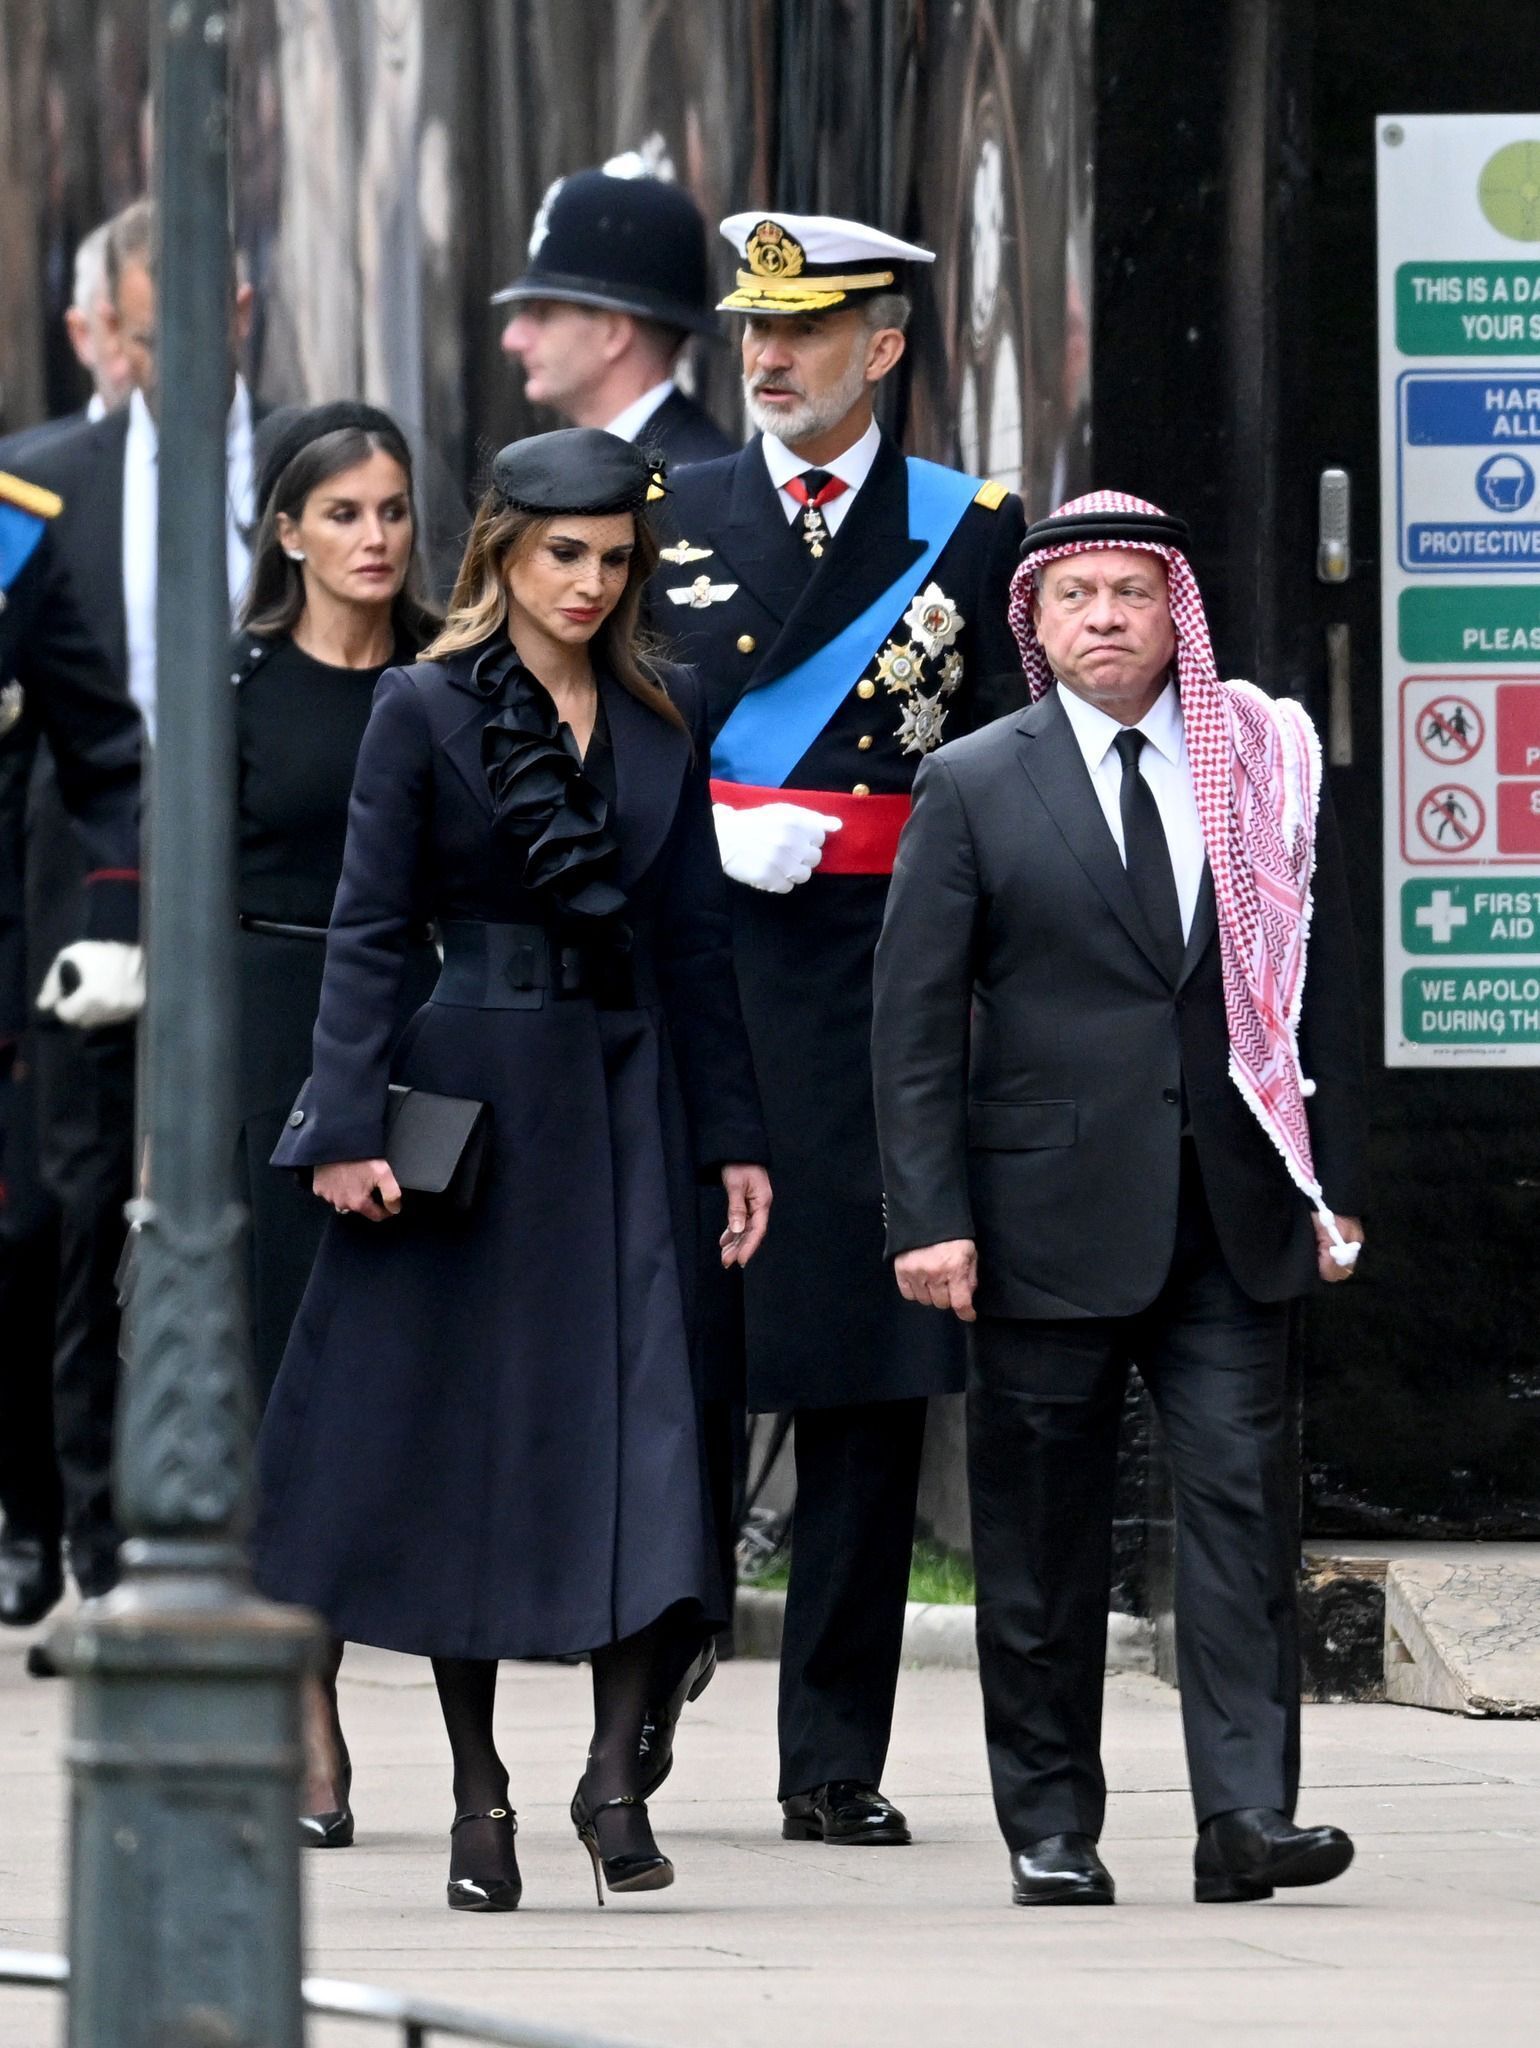 Los Reyes Felipe y Letizia tras los monarcas de Jordania, Abdal y Rania, camino de la abada de Westminster, para asistir al funeral de la reina Isabel.